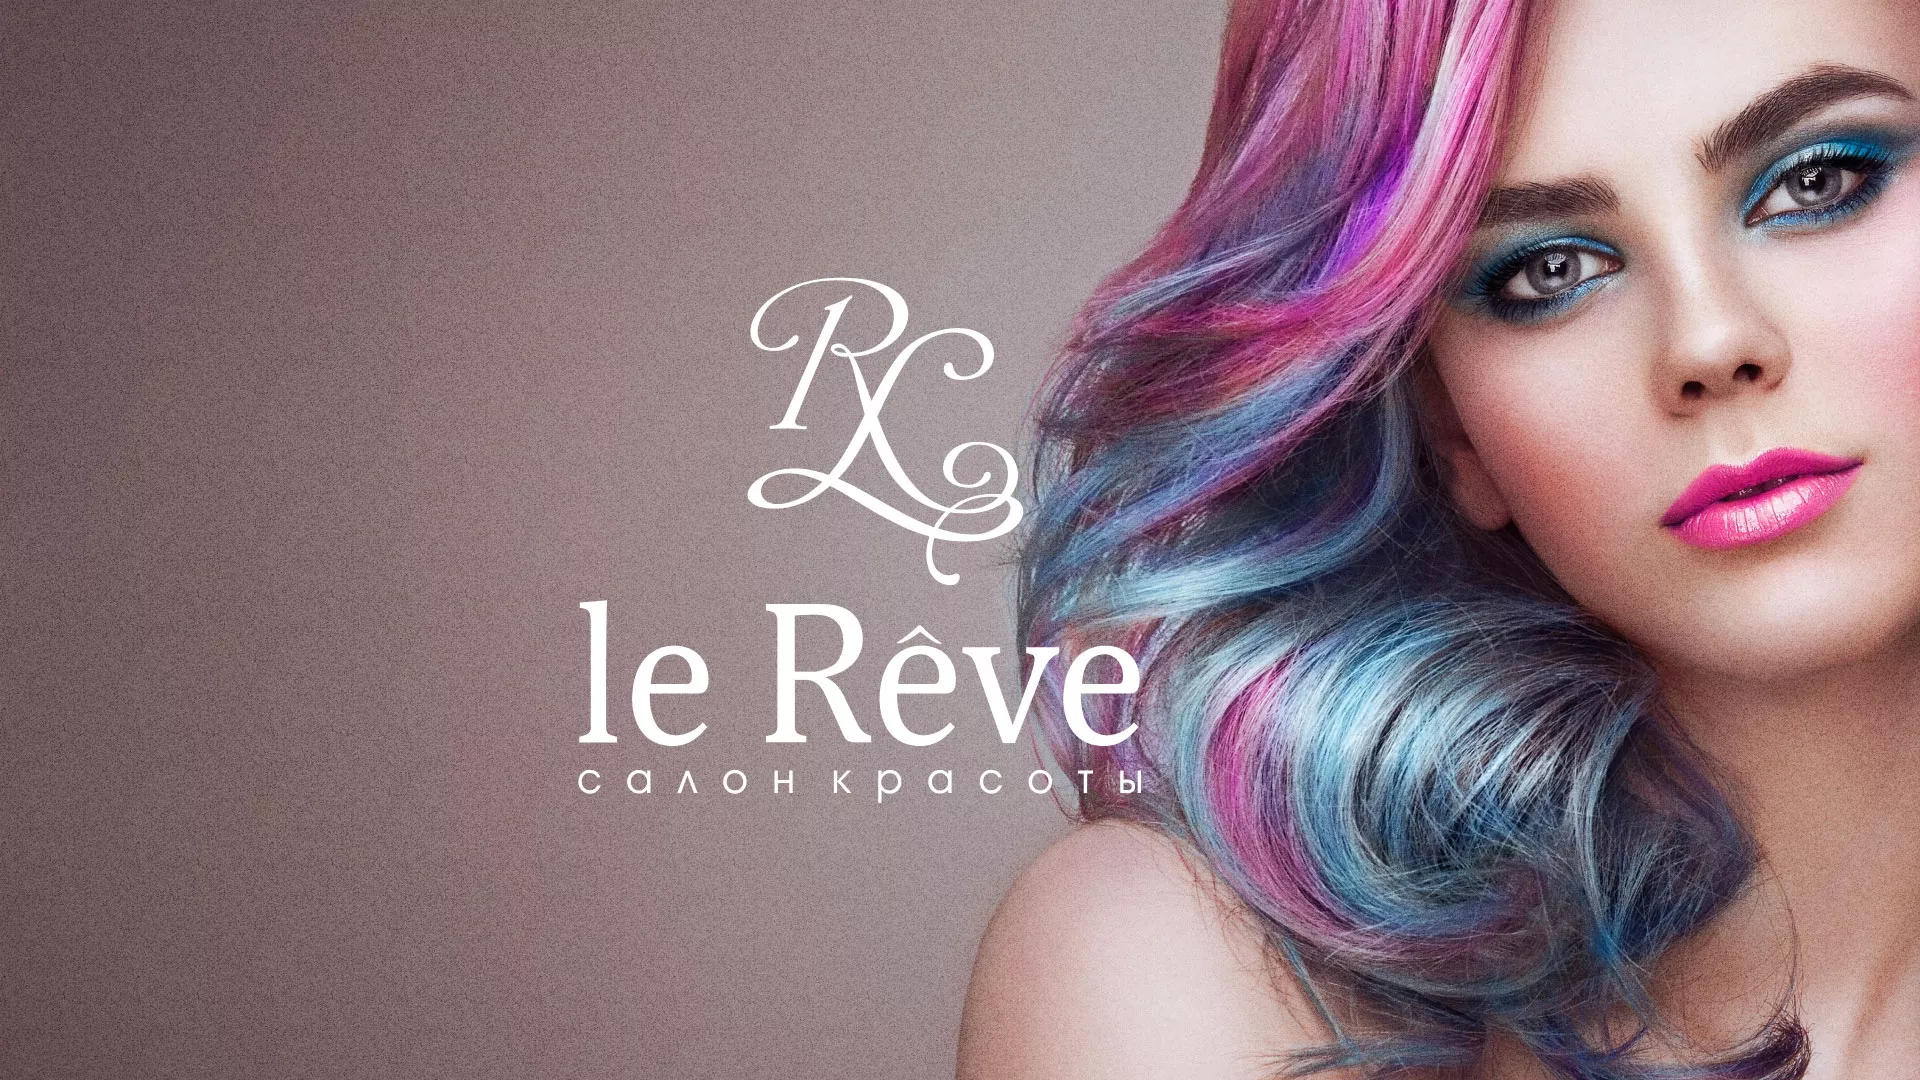 Создание сайта для салона красоты «Le Reve» в Ставрополе